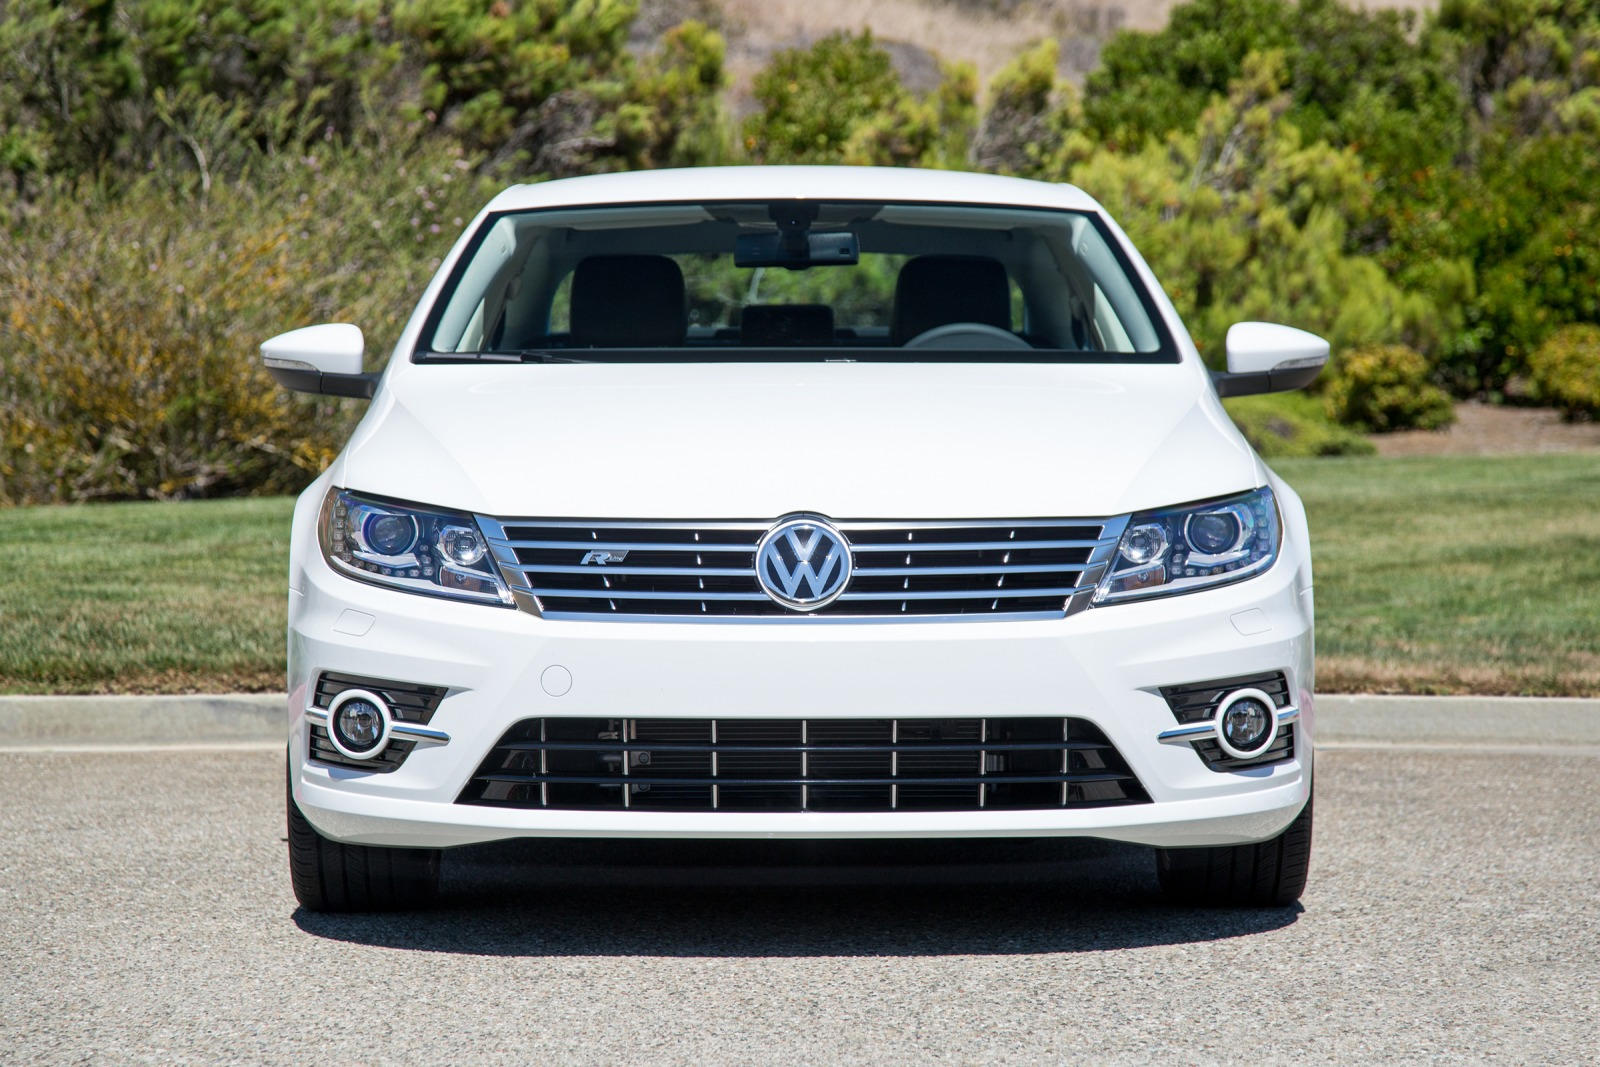 2017 Volkswagen CC Front View